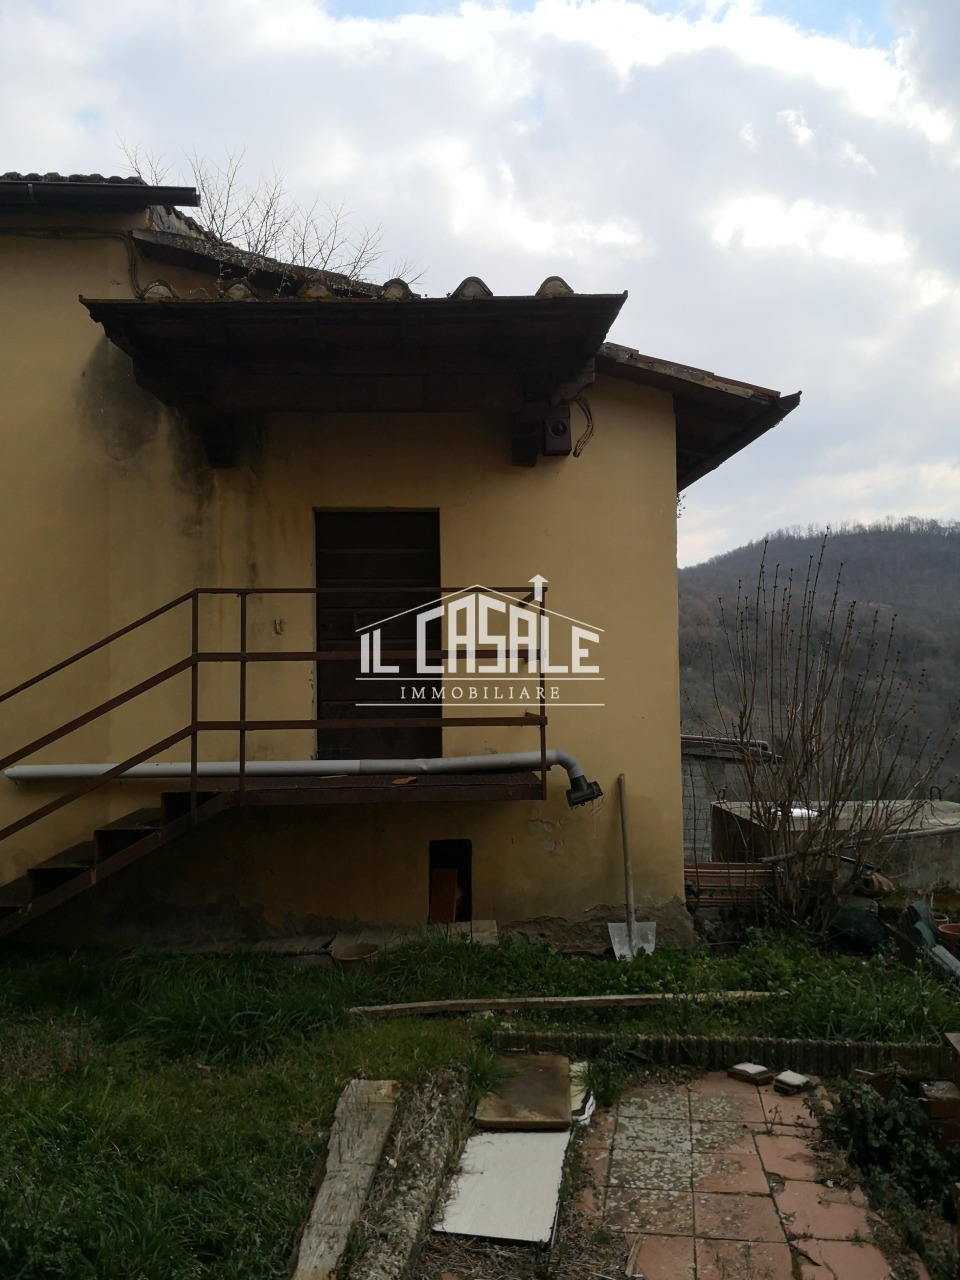 Rustico / Casale in vendita a Dicomano, 4 locali, prezzo € 120.000 | PortaleAgenzieImmobiliari.it